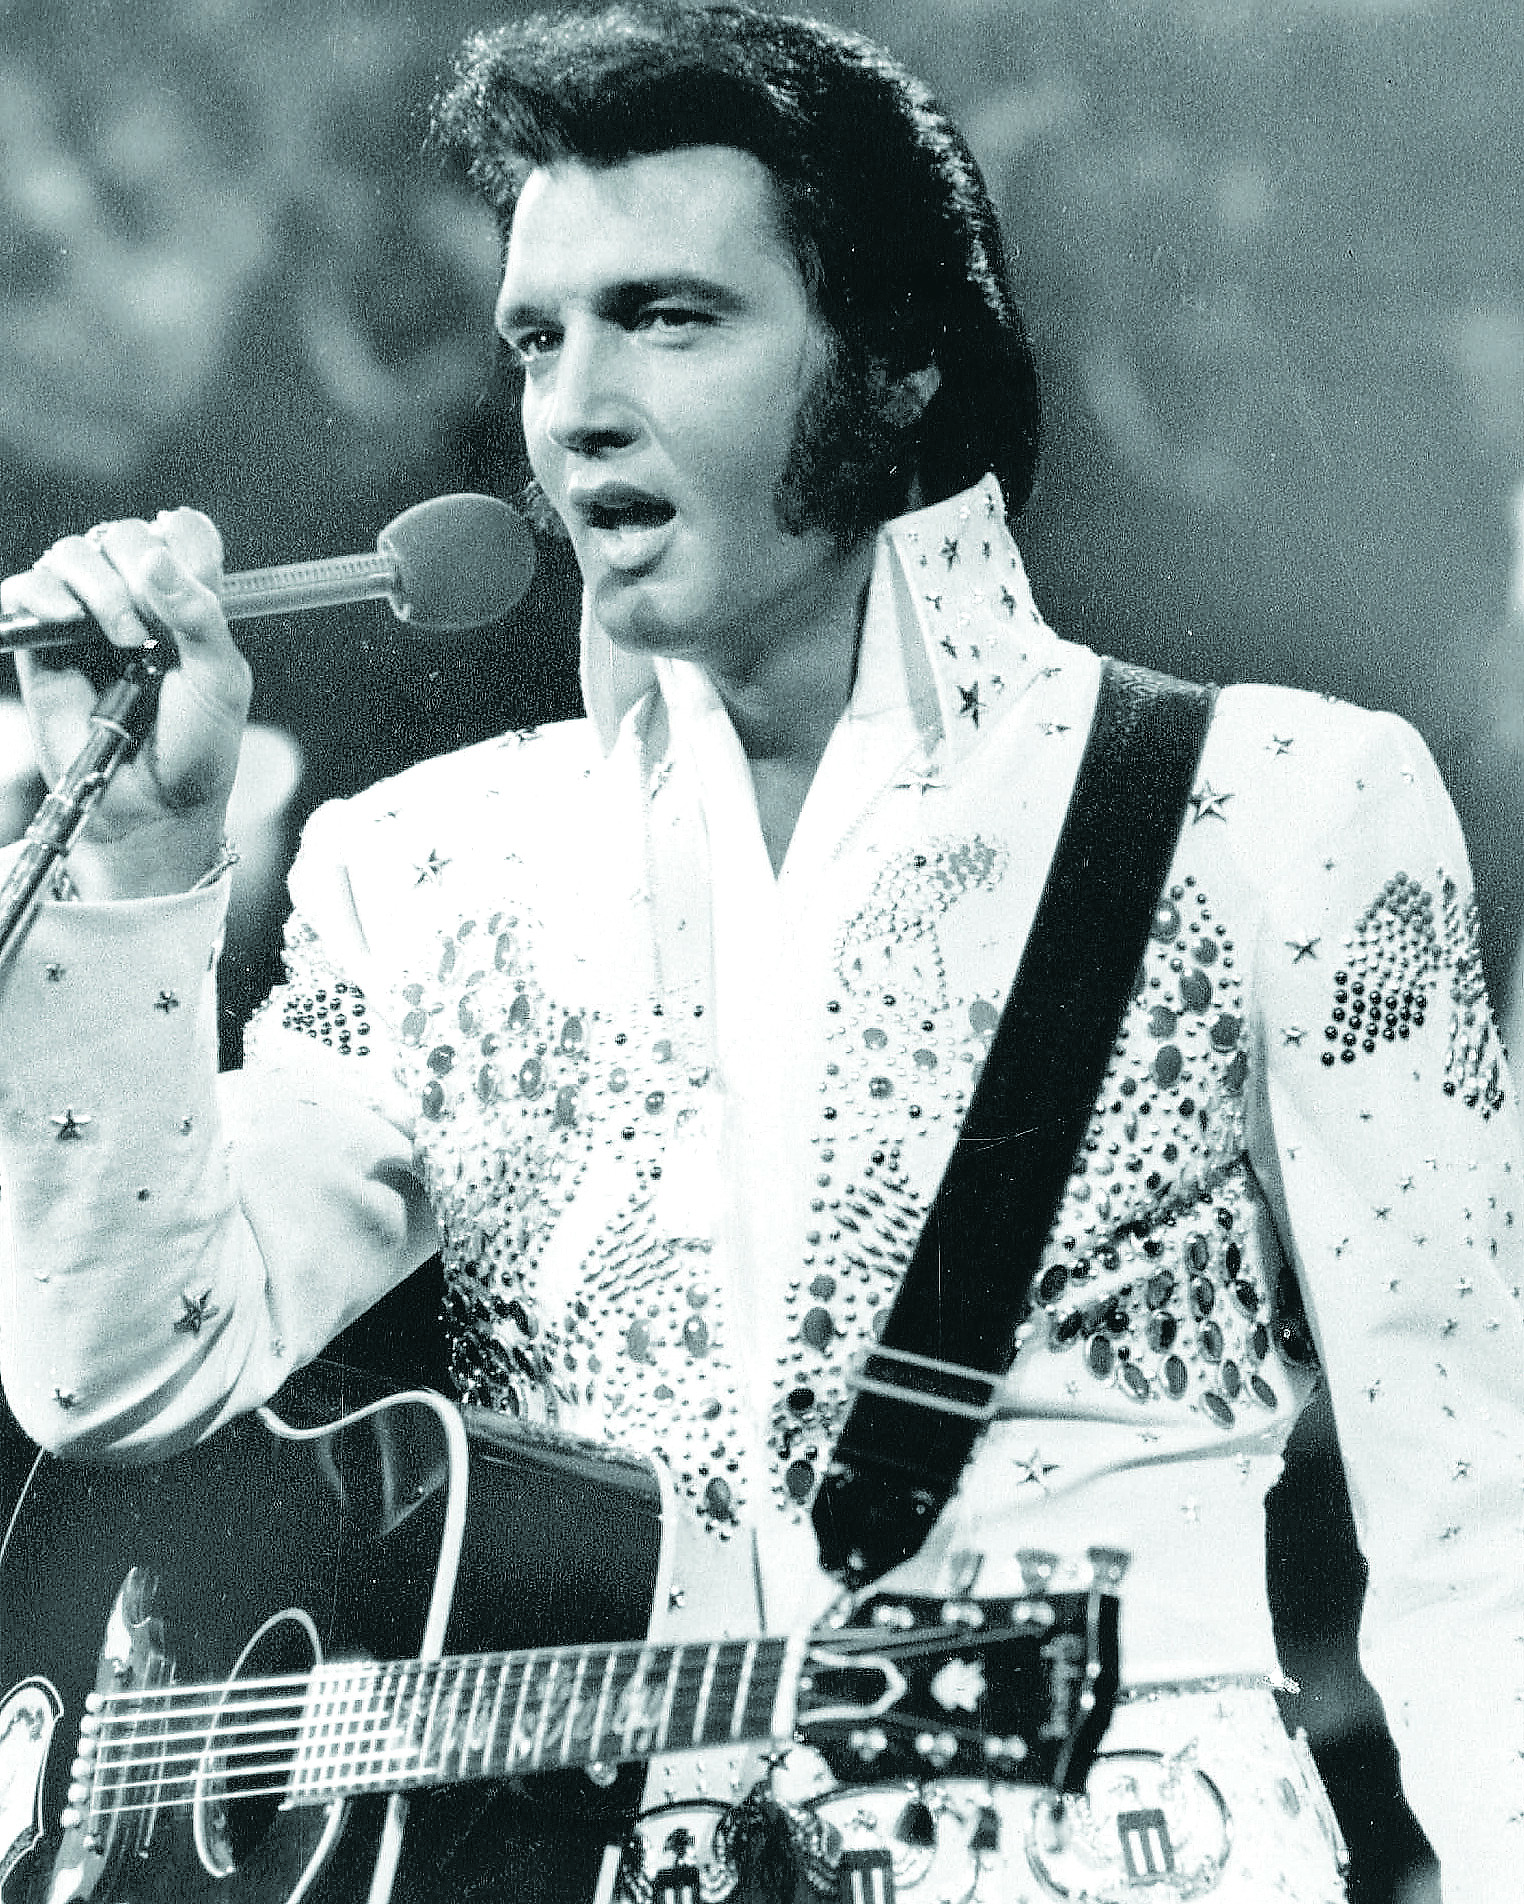 Elvis Presley “revivirá” en un espectáculo con orquesta 